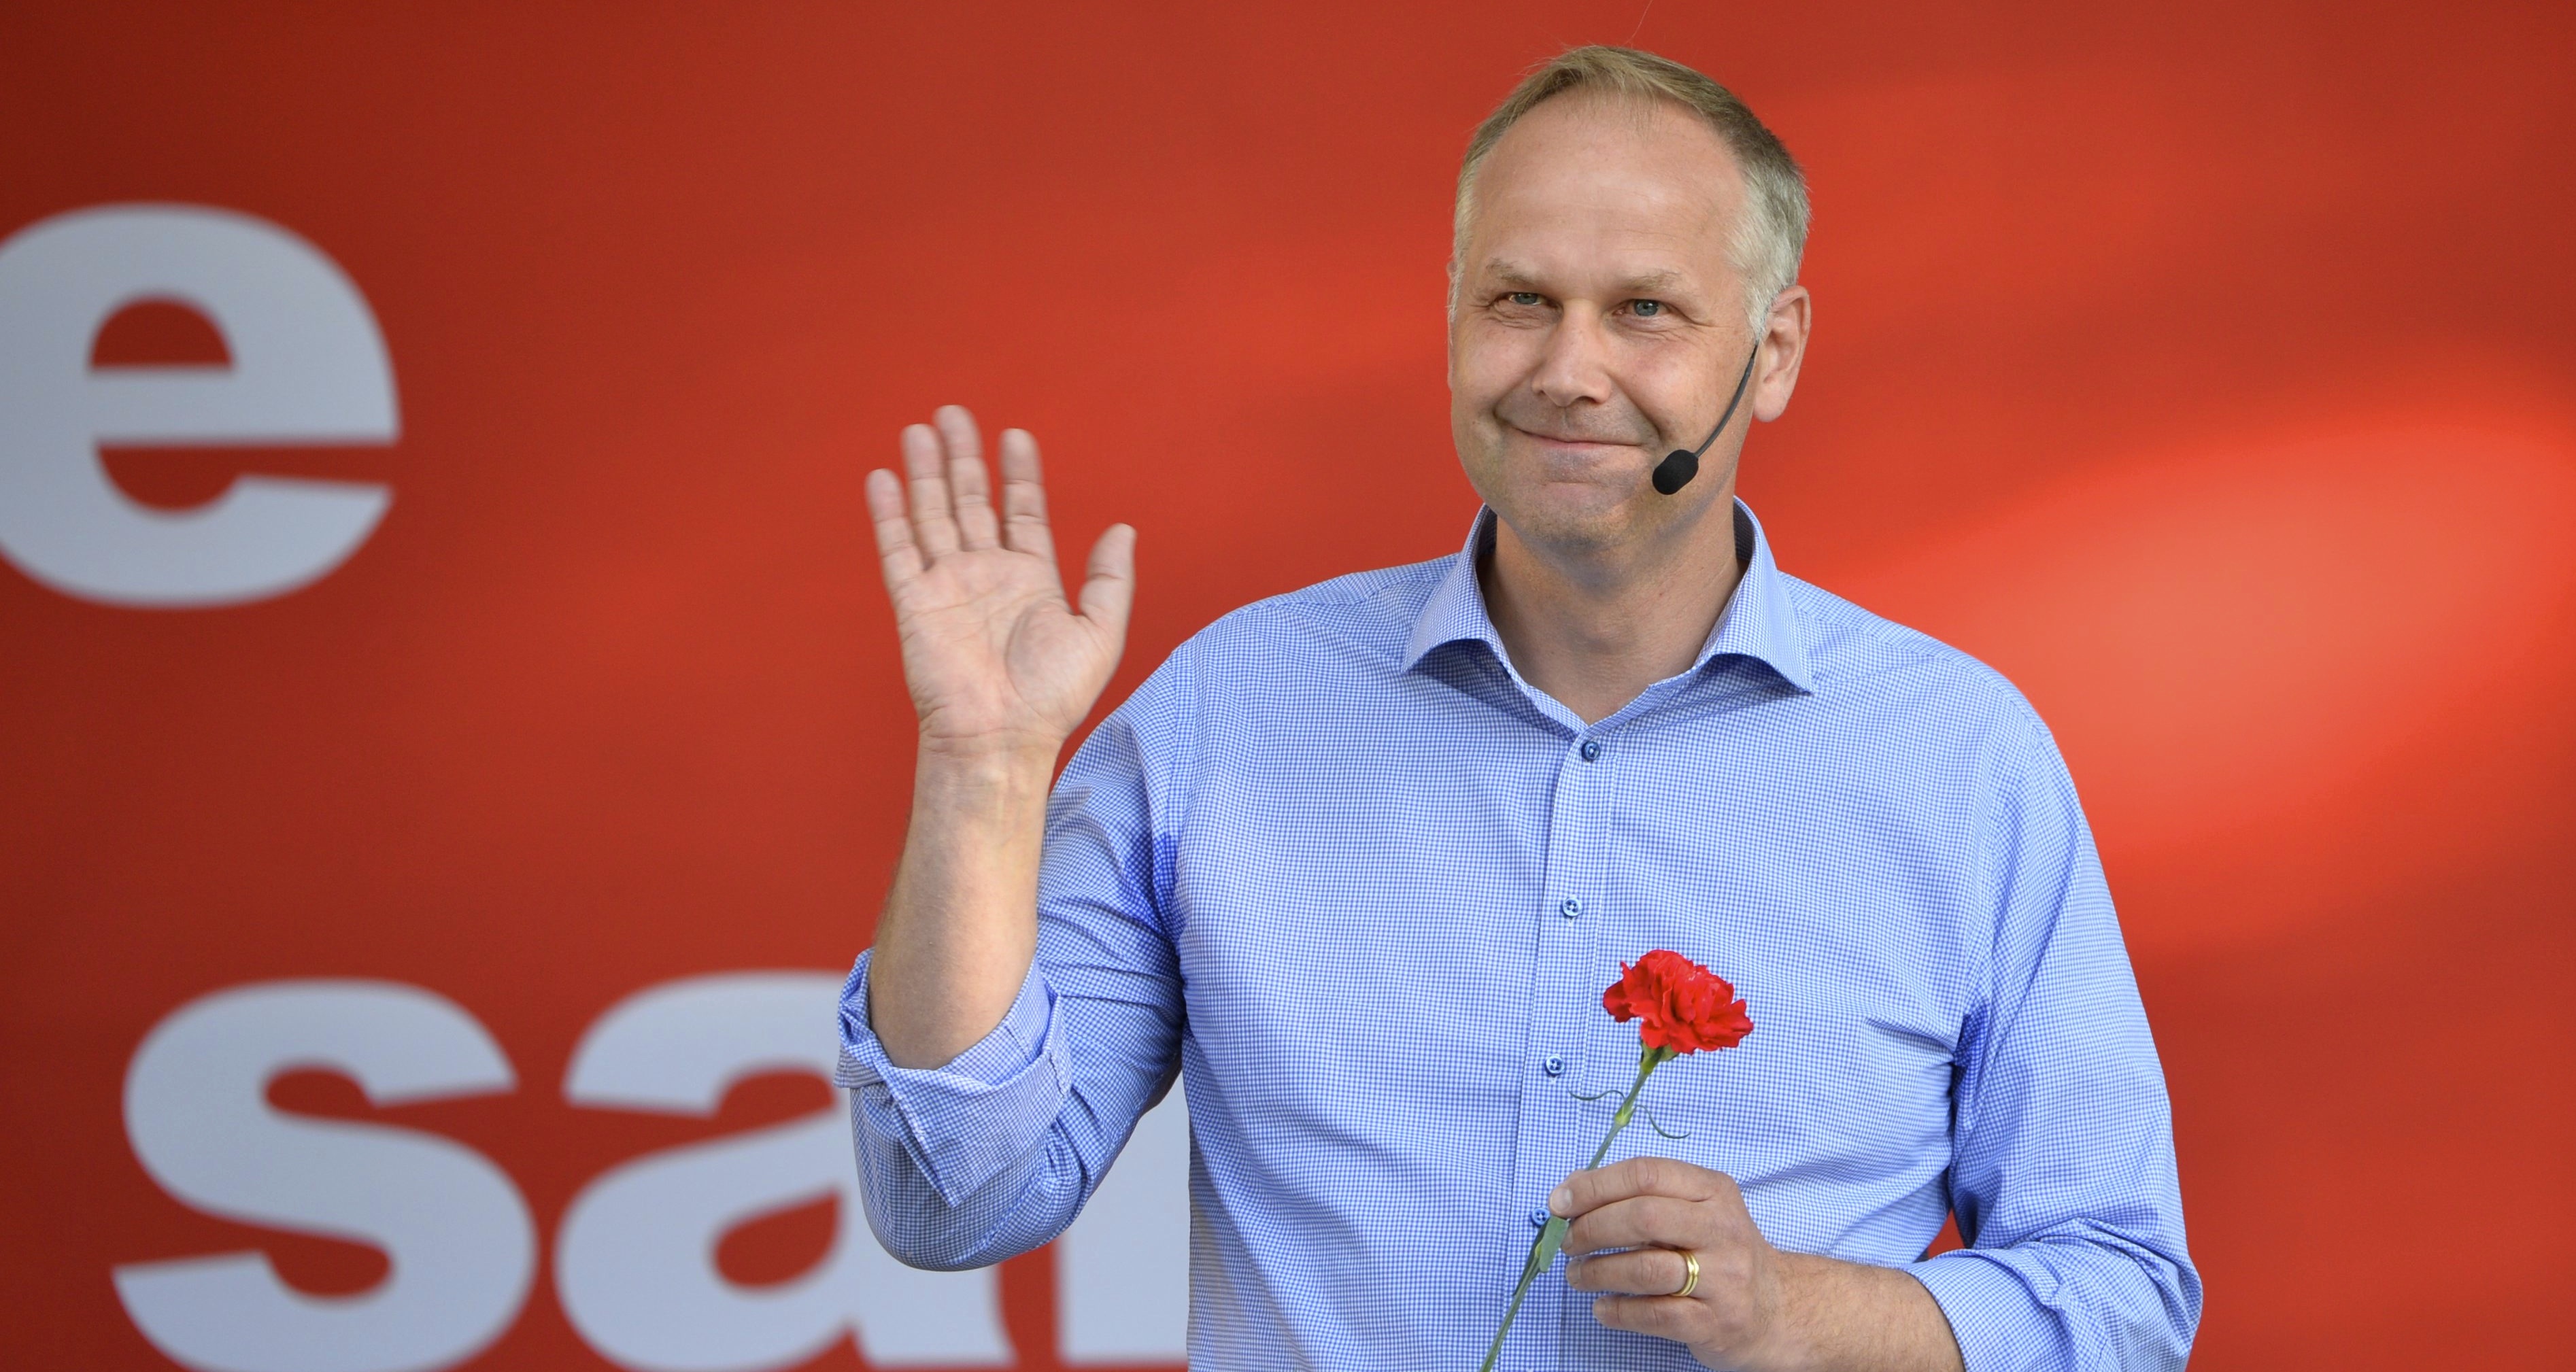 Vänsterpartiets ledare Jonas Sjöstedt pratade om politik i Almedalen. Foto: Henrik Montgomery/TT